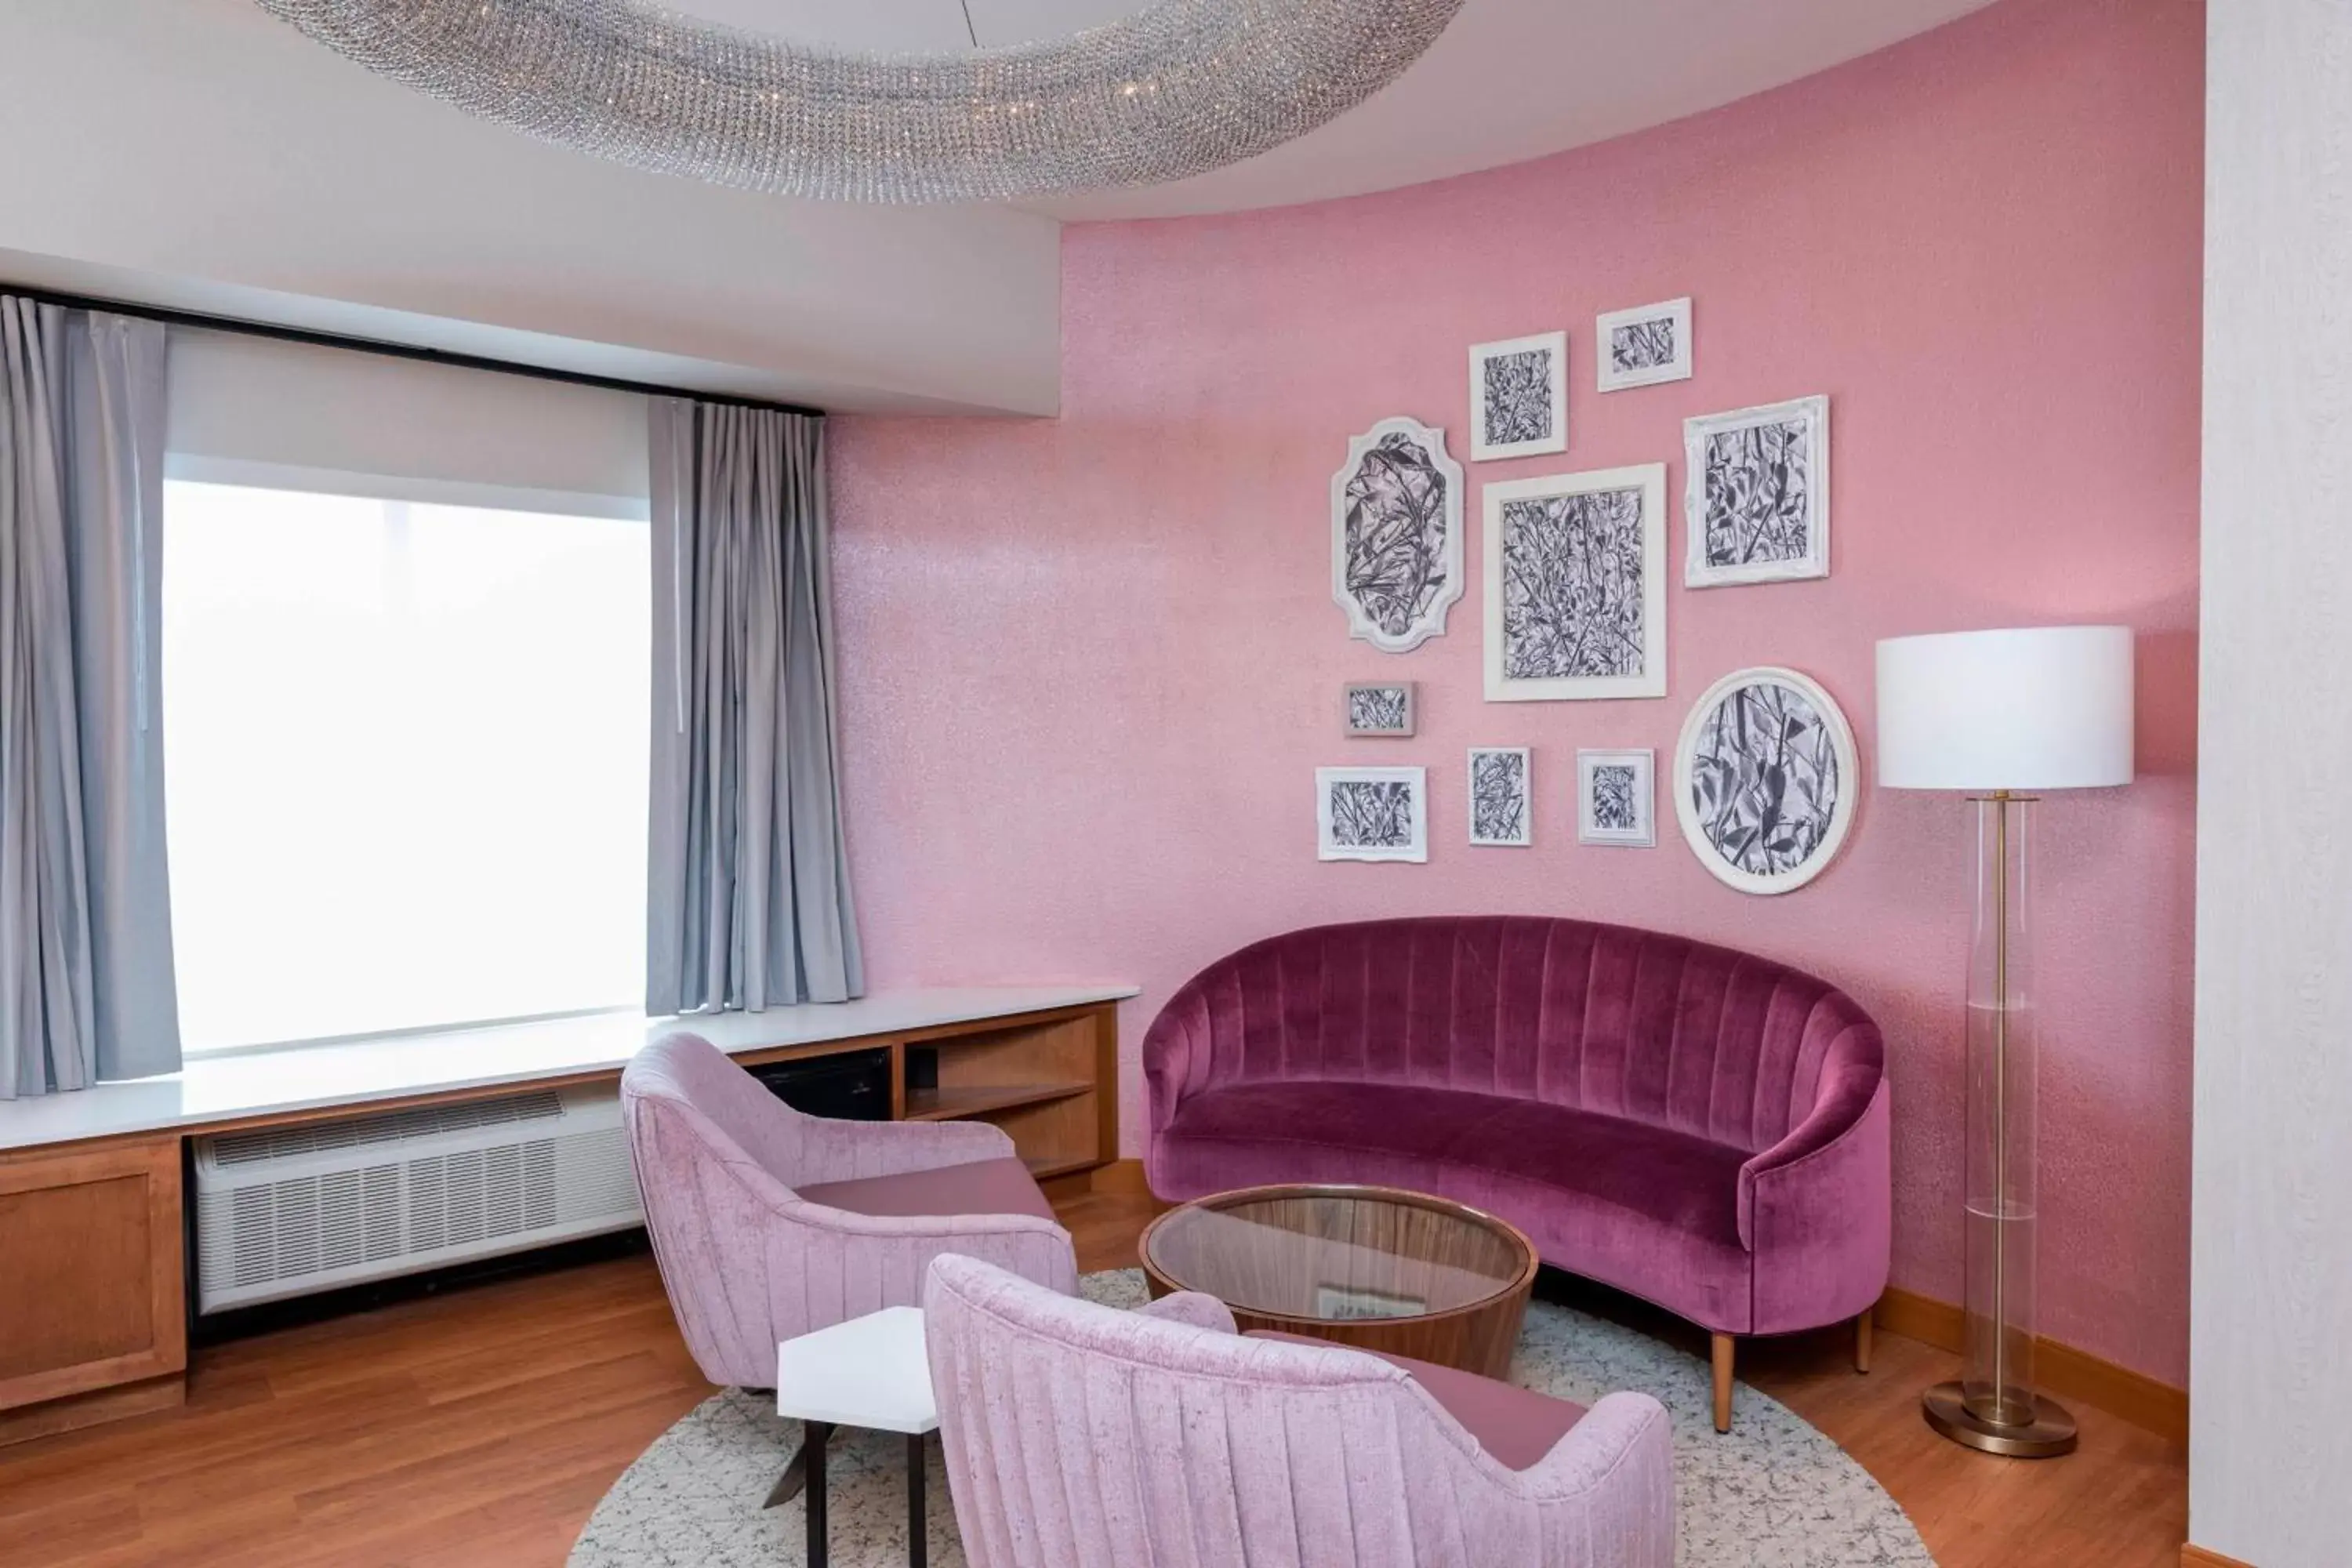 Bedroom, Seating Area in Fairfield Inn & Suites by Marriott Fair Oaks Farms